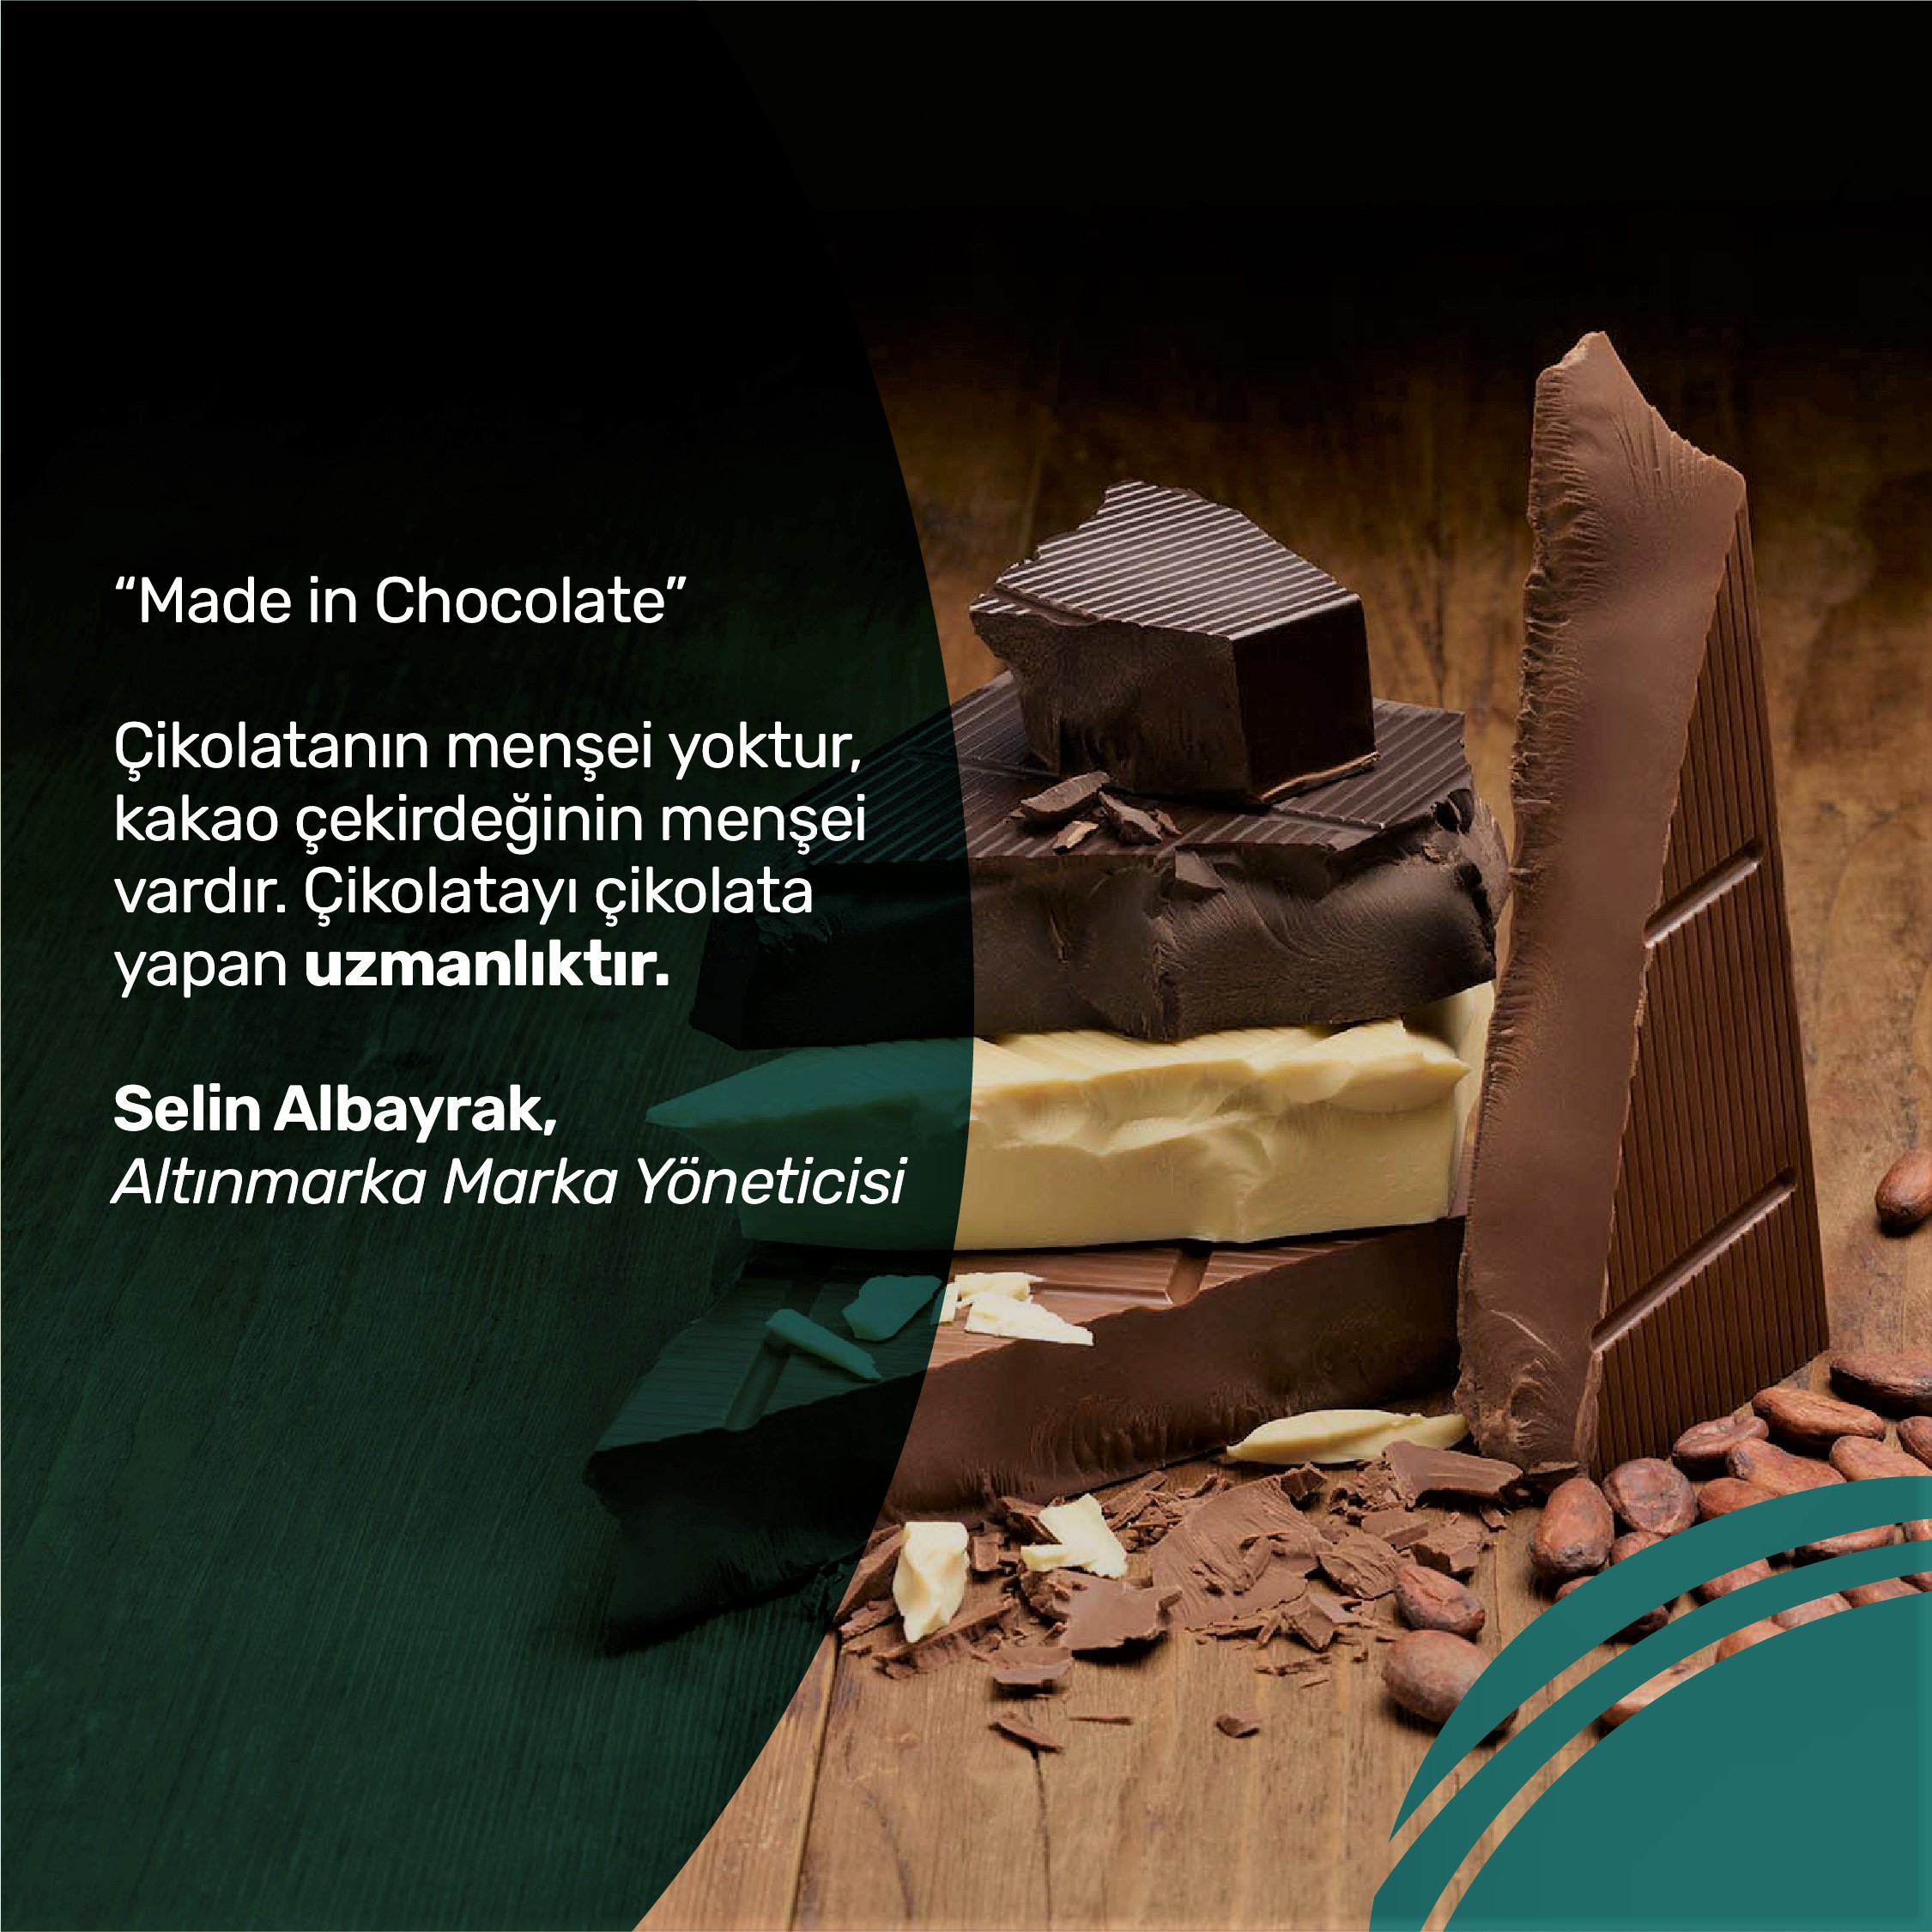 Yüksek oranda kakao içeren çikolata hem mutlu ediyor hem uykuyu iyileştiriyor